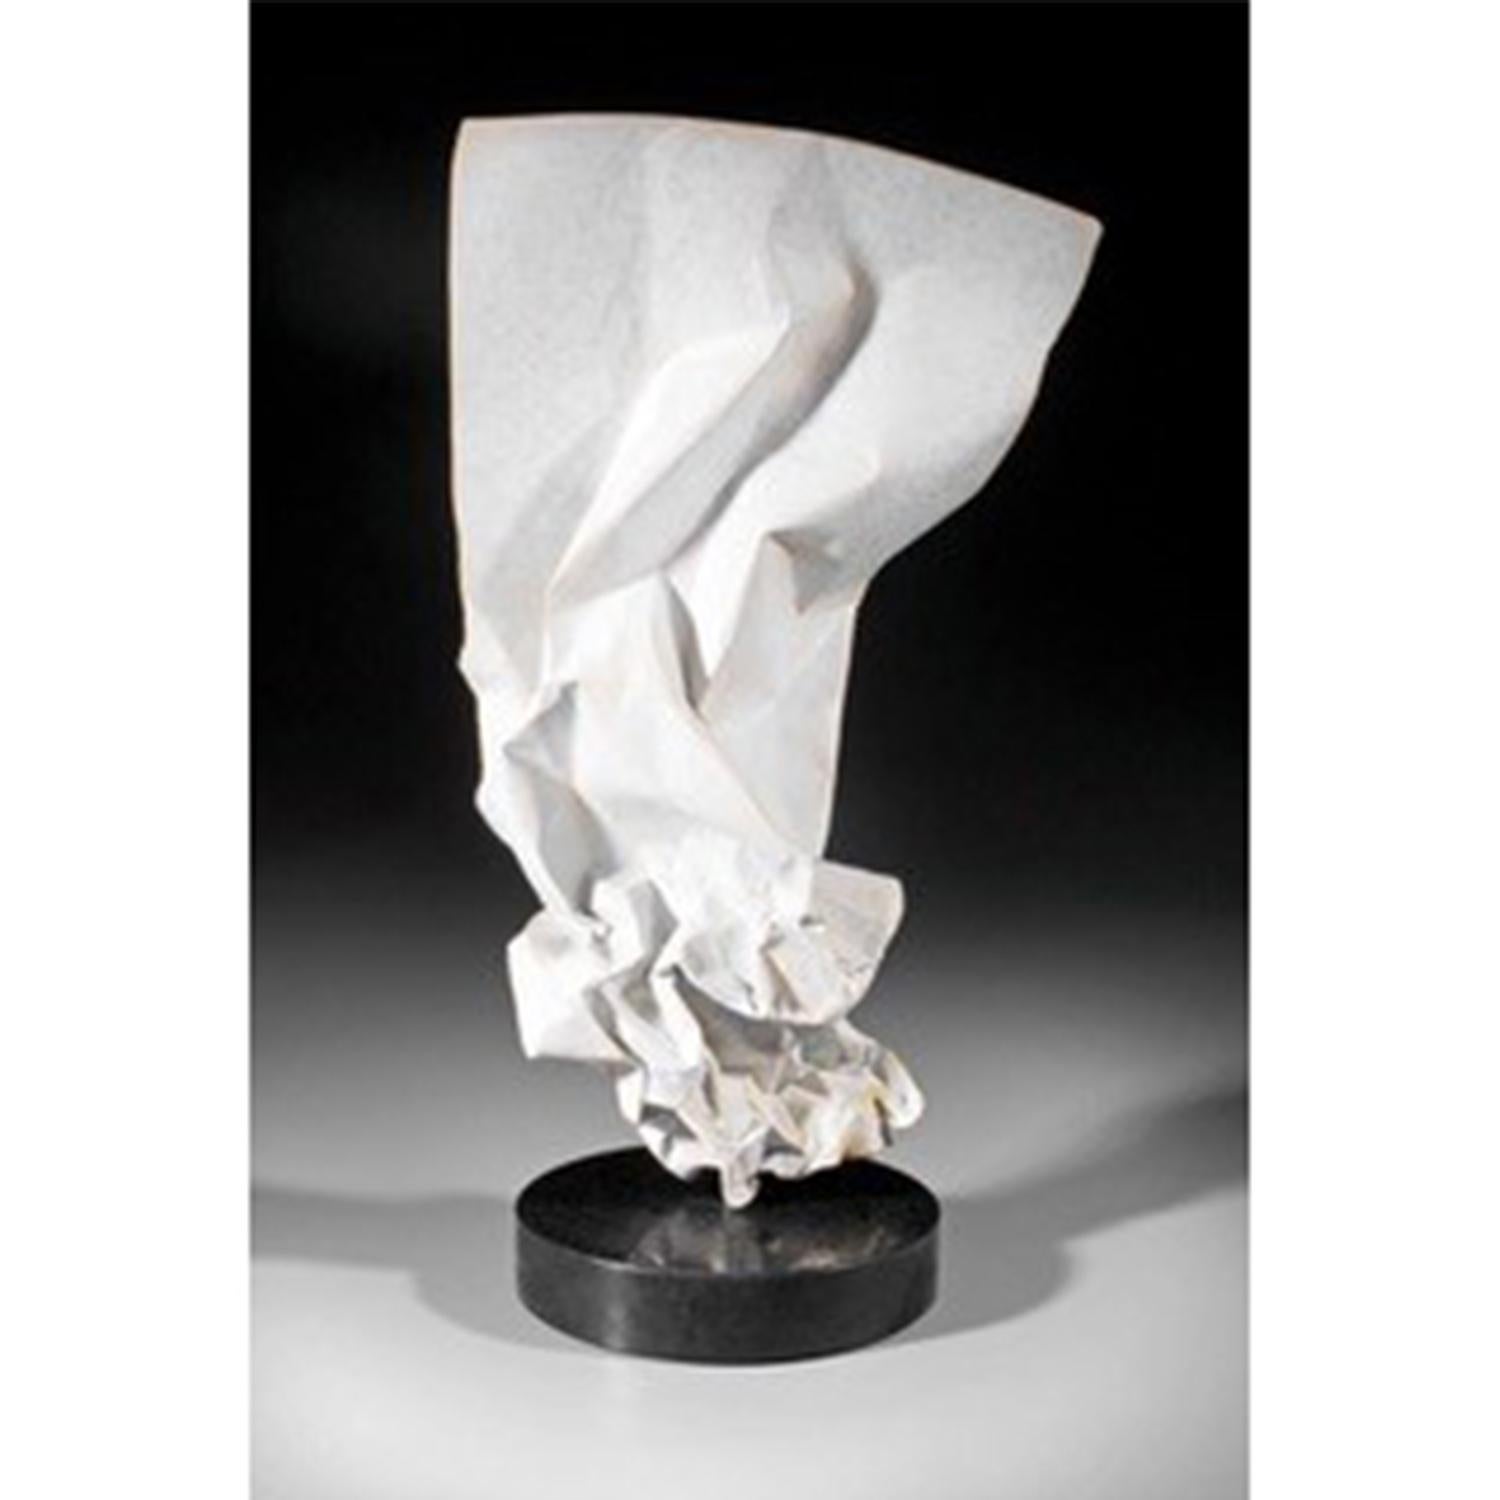 Kevin Box Figurative Sculpture - Paper Dancer Ed. 15/24